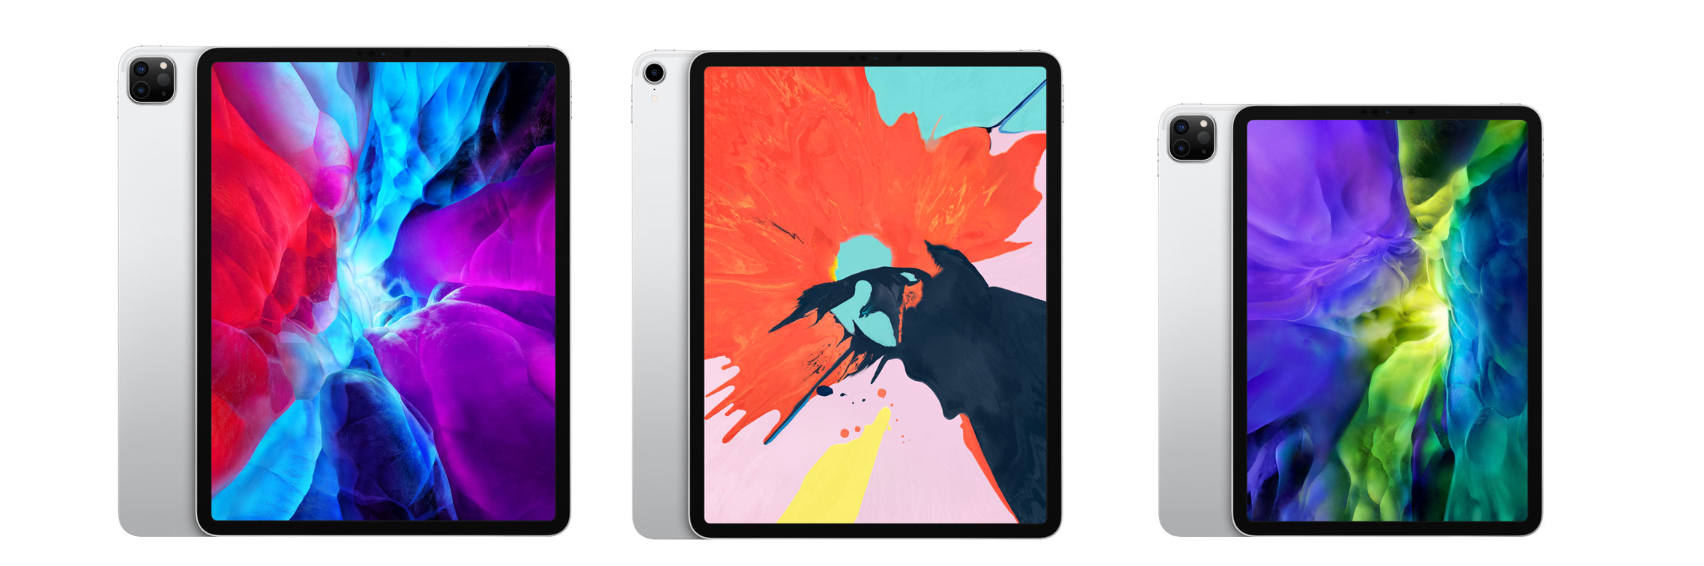 新款iPad Pro 2020 值得买吗? - 知乎